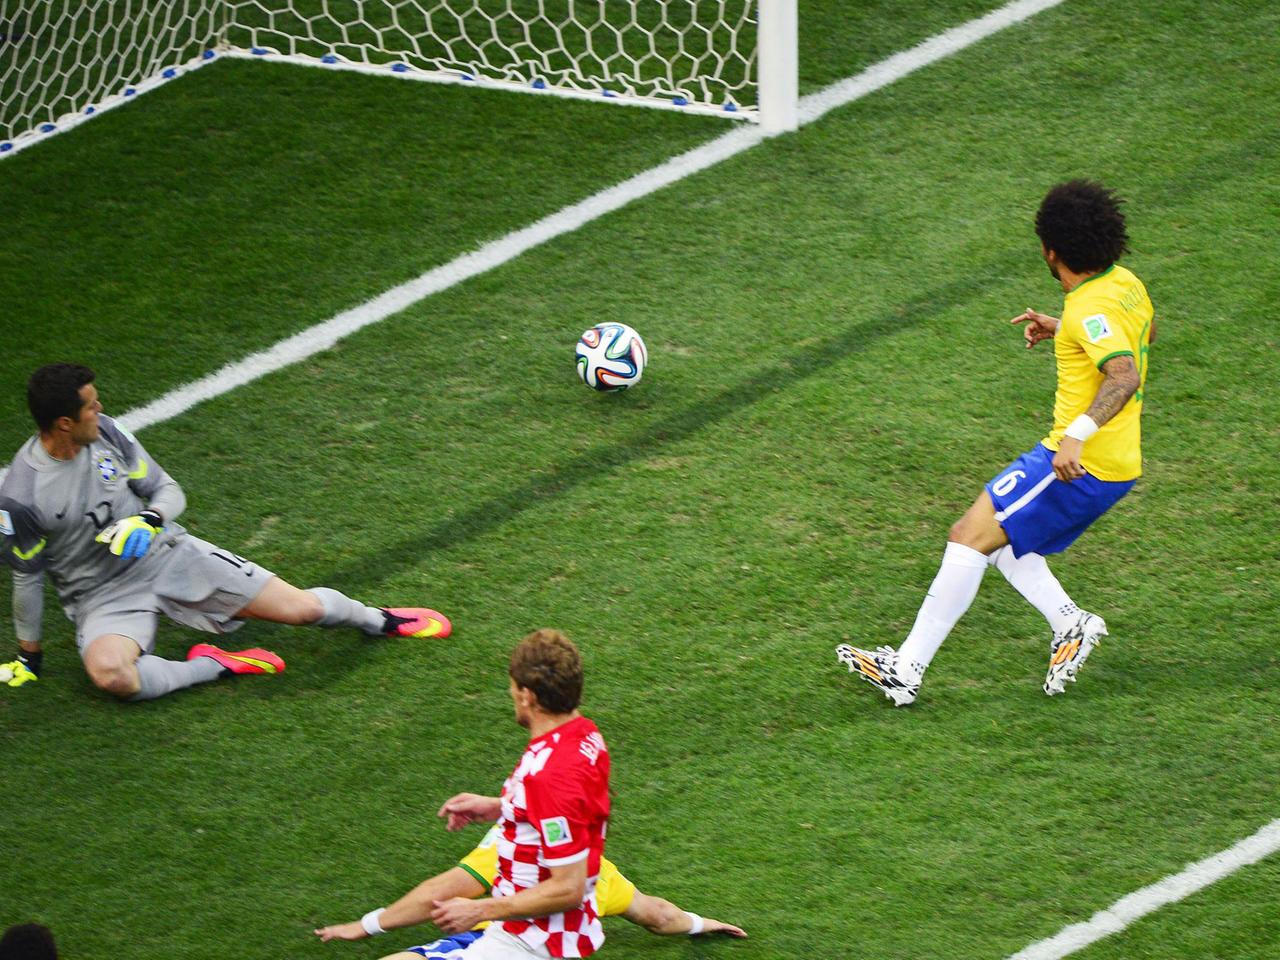 Der erste Treffer bei der Fußball-Weltmeisterschaft in Brasilien: Ein Eigentor des brasilanischen Verteidigers Marcelo im Spiel gegen Kroatien (3:1).